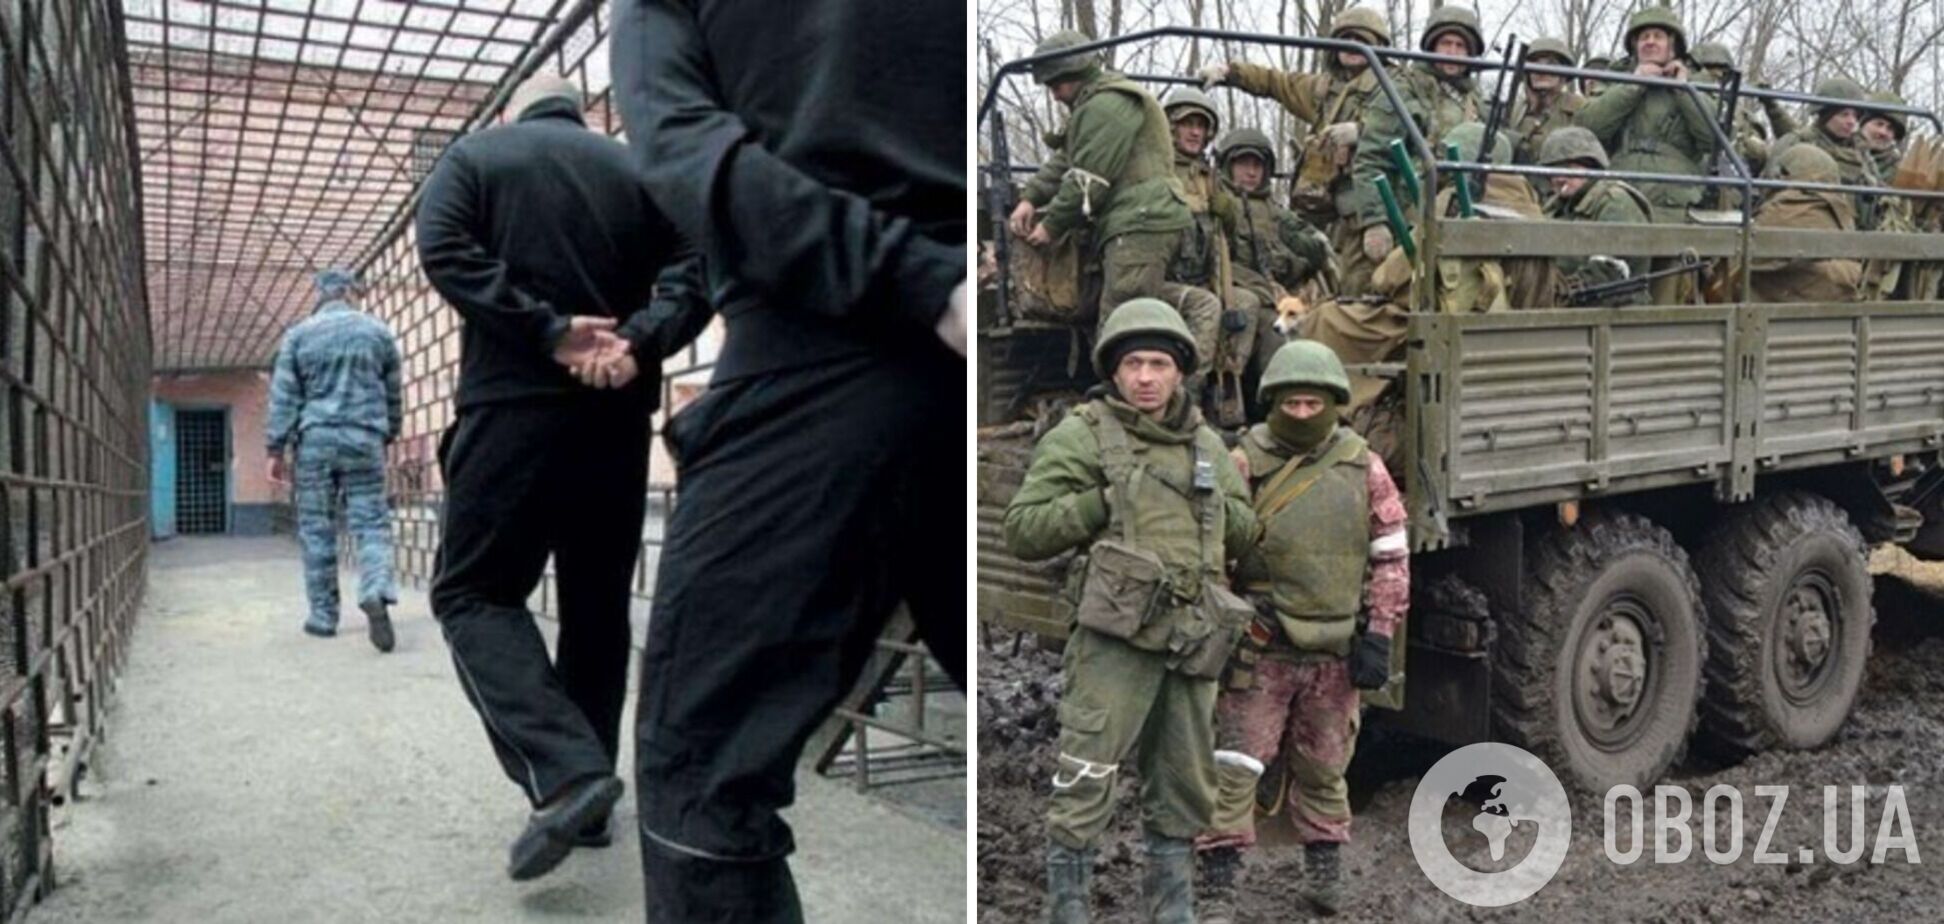 'Откажитесь – пристрелим': в Донецке бросили на подвал 70 российских зеков, отказавшихся идти в 'мясной штурм'. Видео